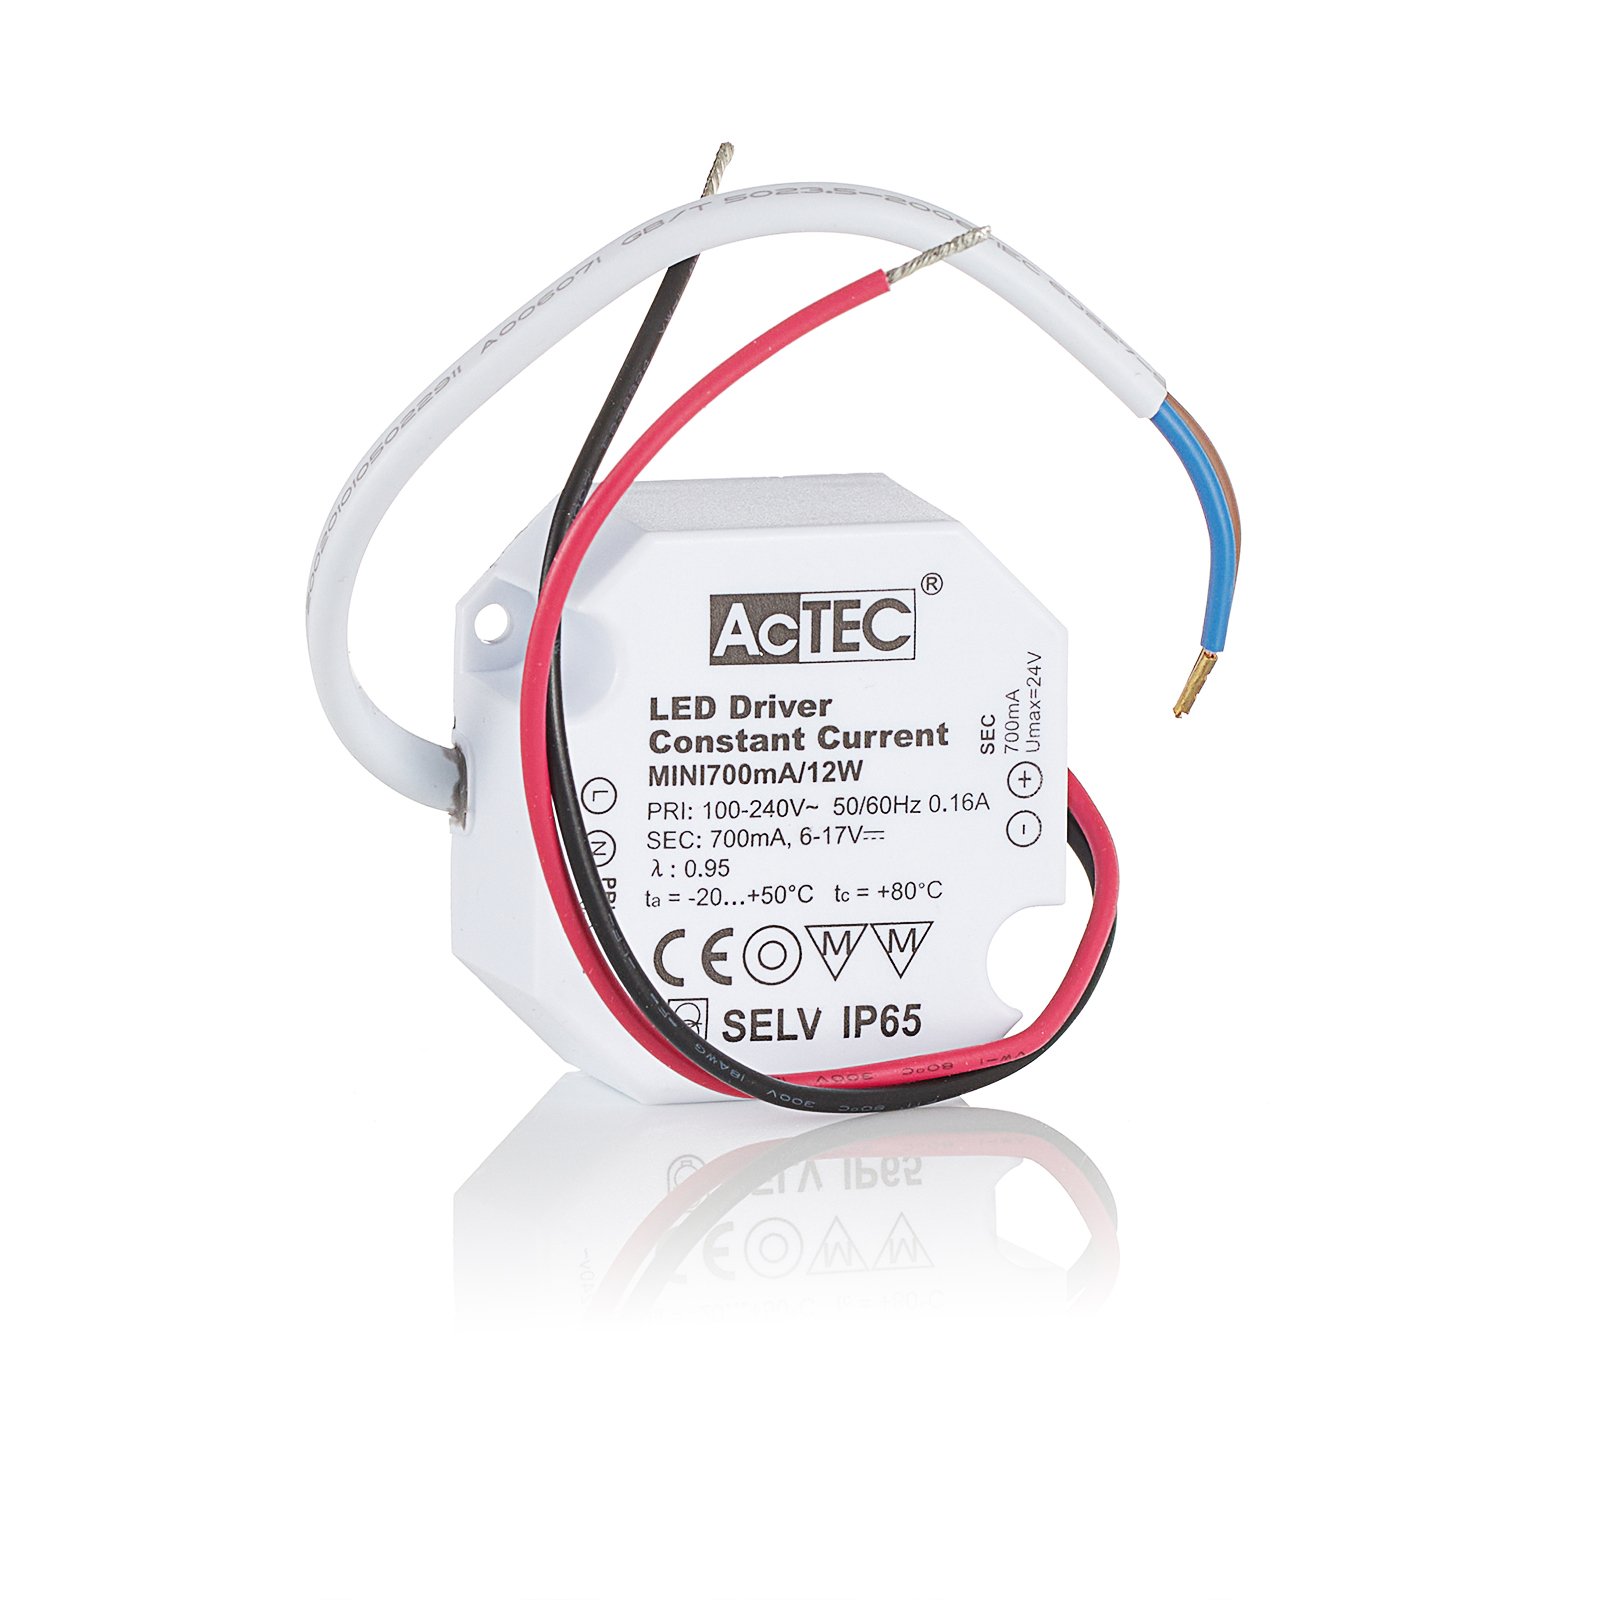 AcTEC Mini LED budič CC 700mA, 12W, IP65